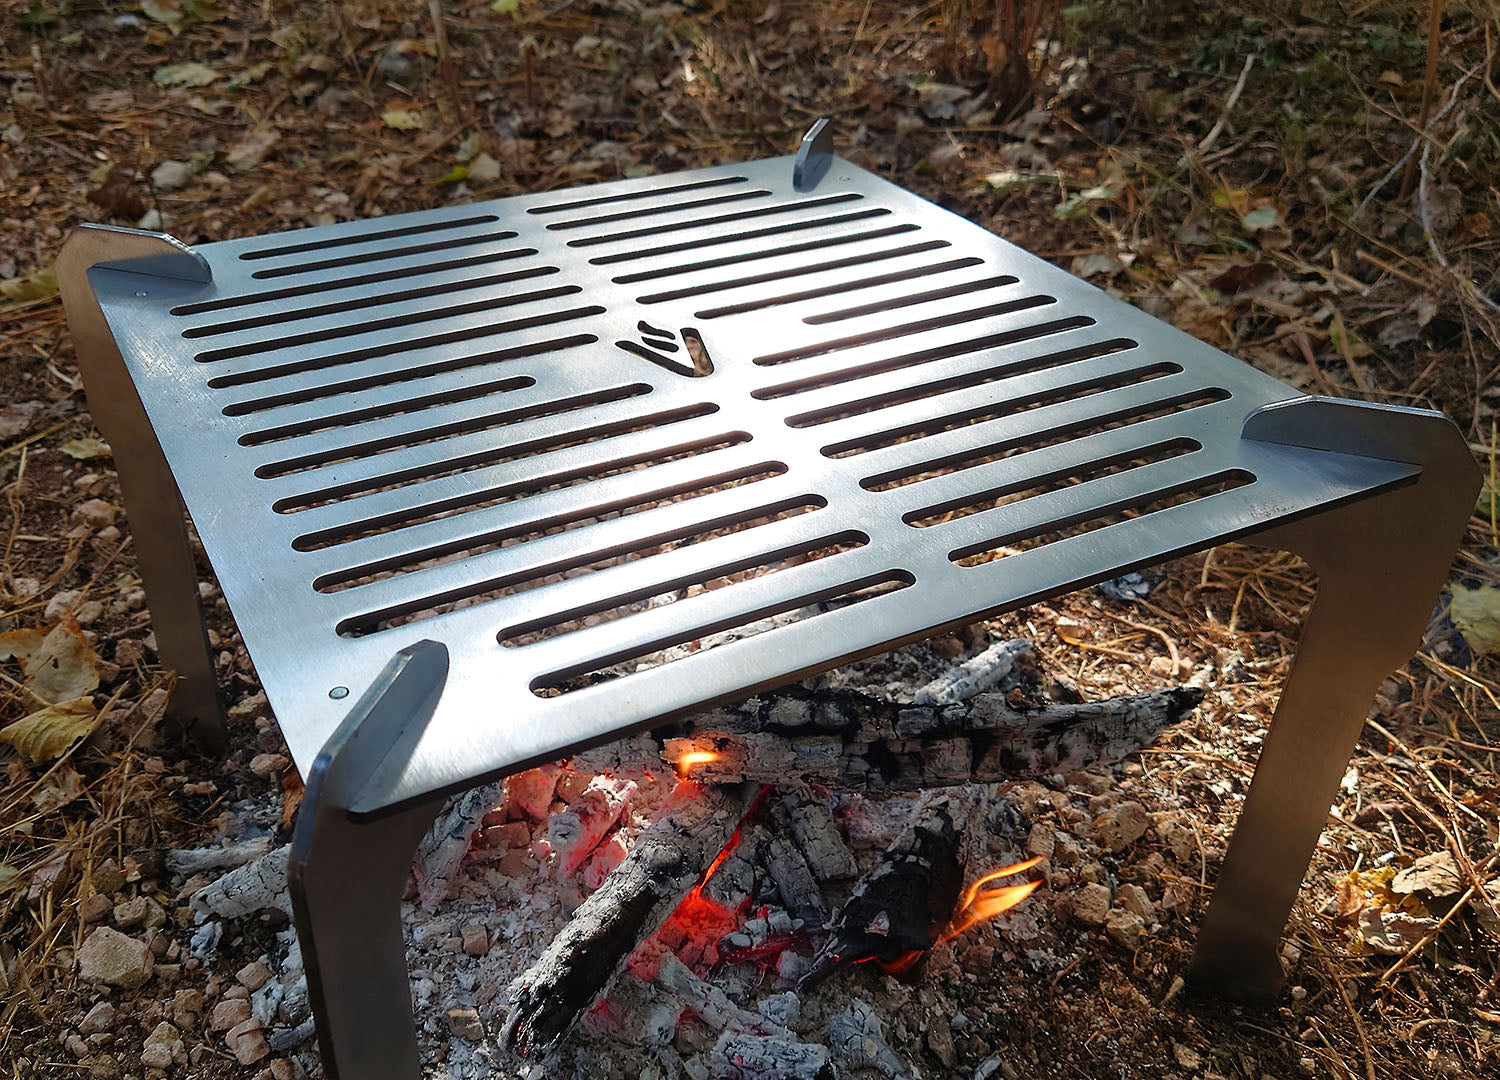 Volcann Ferox Open Fire Grill & Cooktop in an outdoor setting, closeup shot